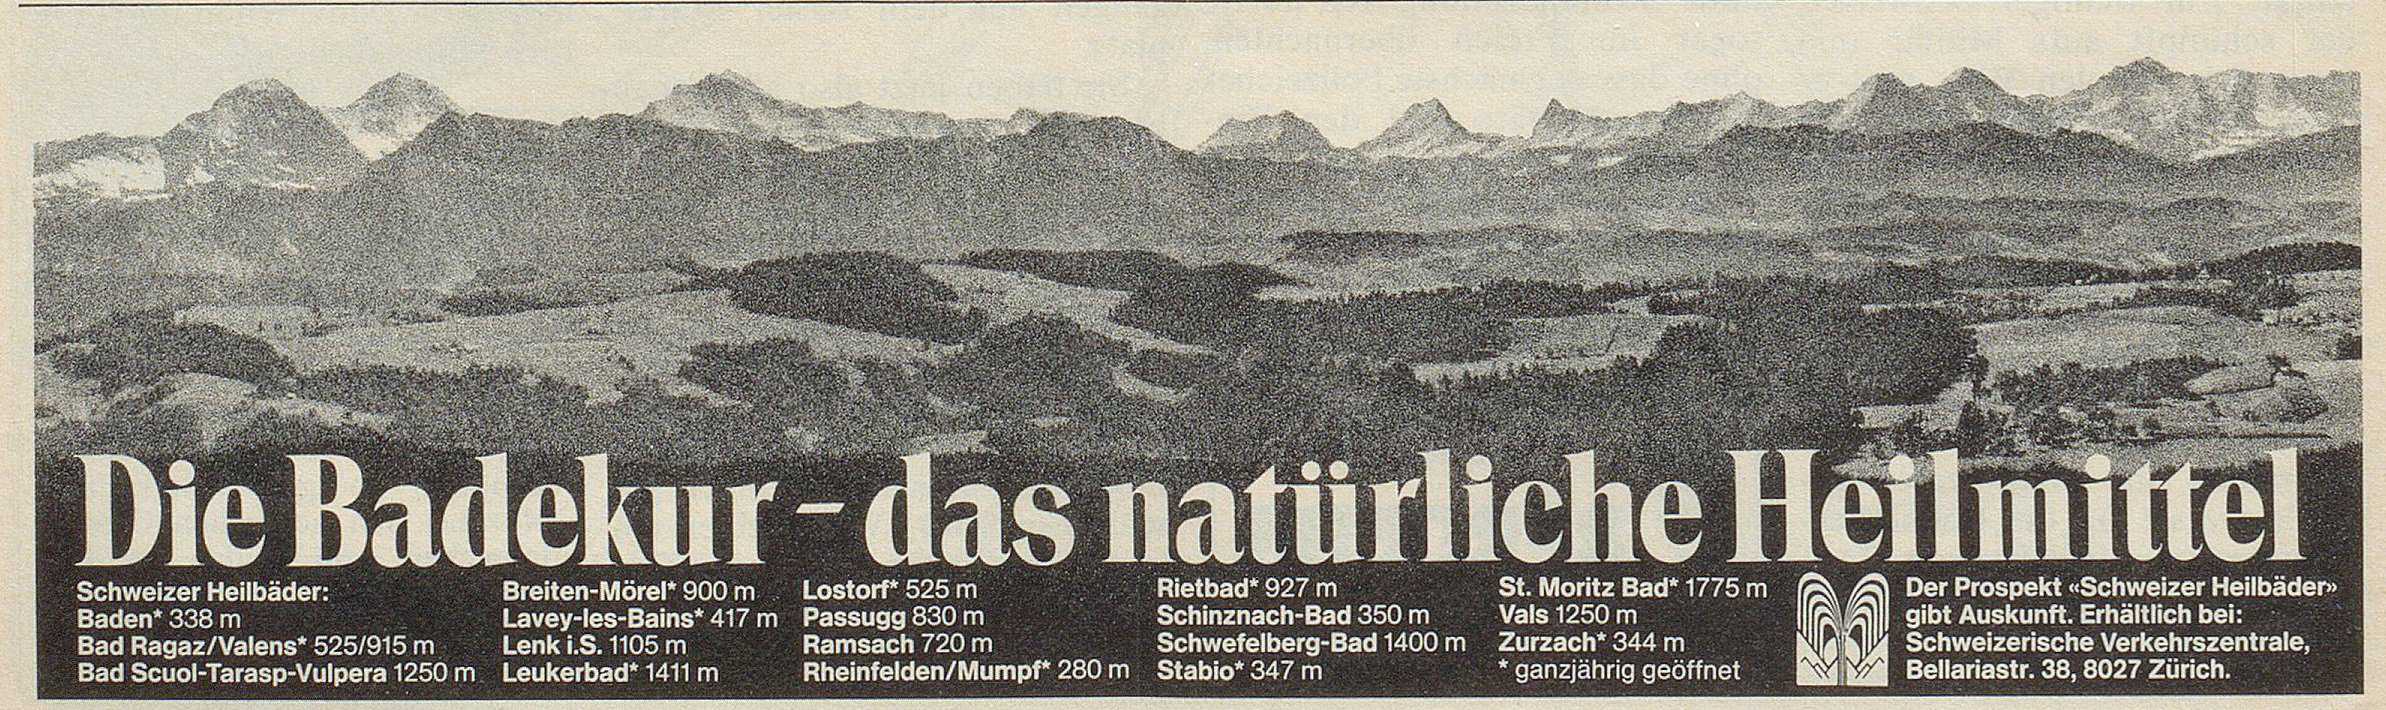 1979 Inserat SVZ Die Badekur -das natürliche Heilmittel